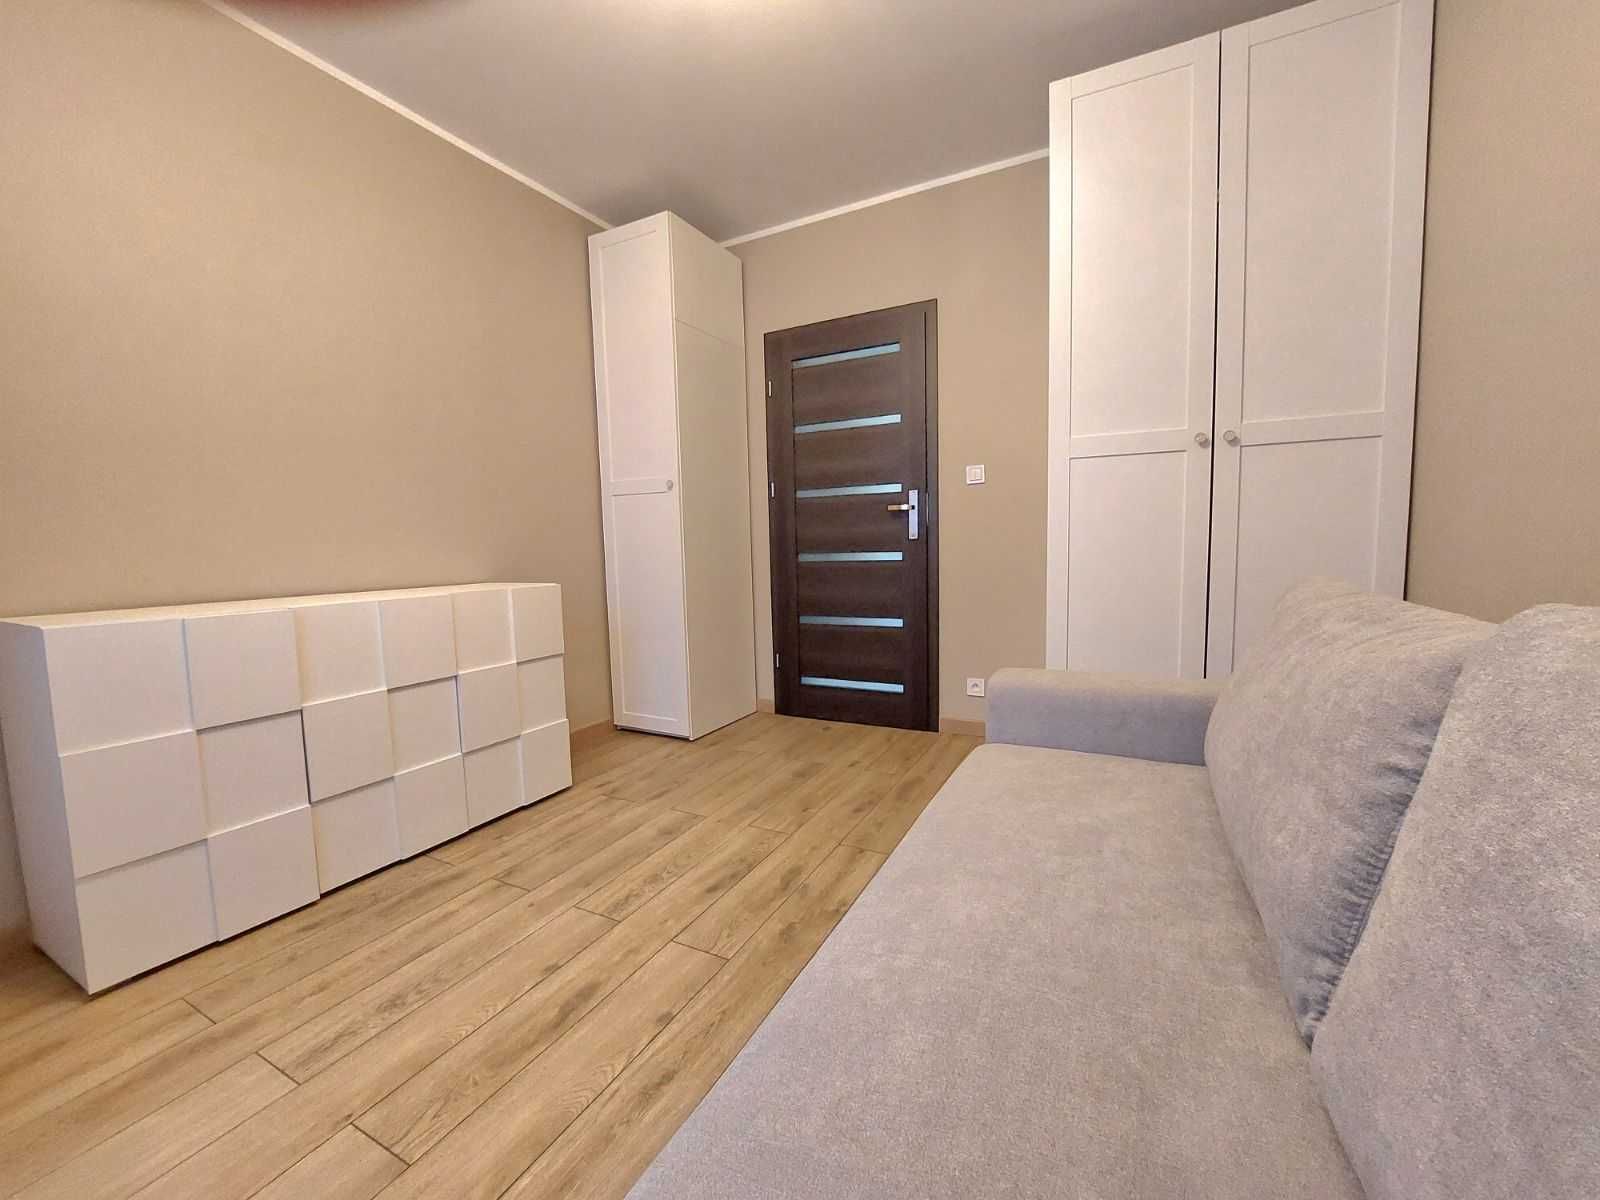 Wynajmę mieszkanie ok. 50 m2 w Krotoszynie